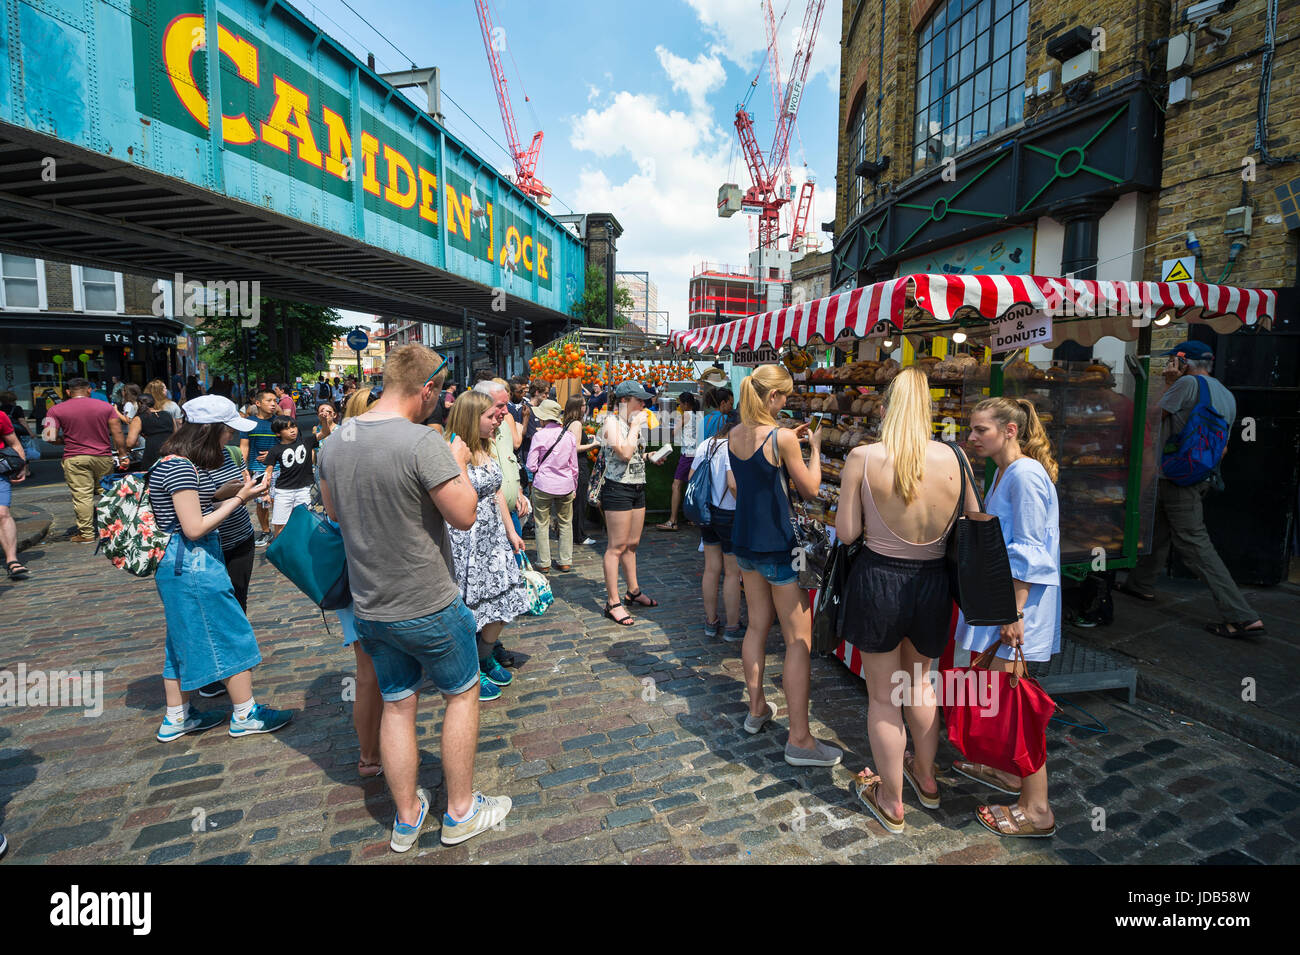 Londra - Giugno 18, 2017: la gente ad esplorare la vivace Camden Market area di Londra sulla soleggiata giornata estiva. Foto Stock